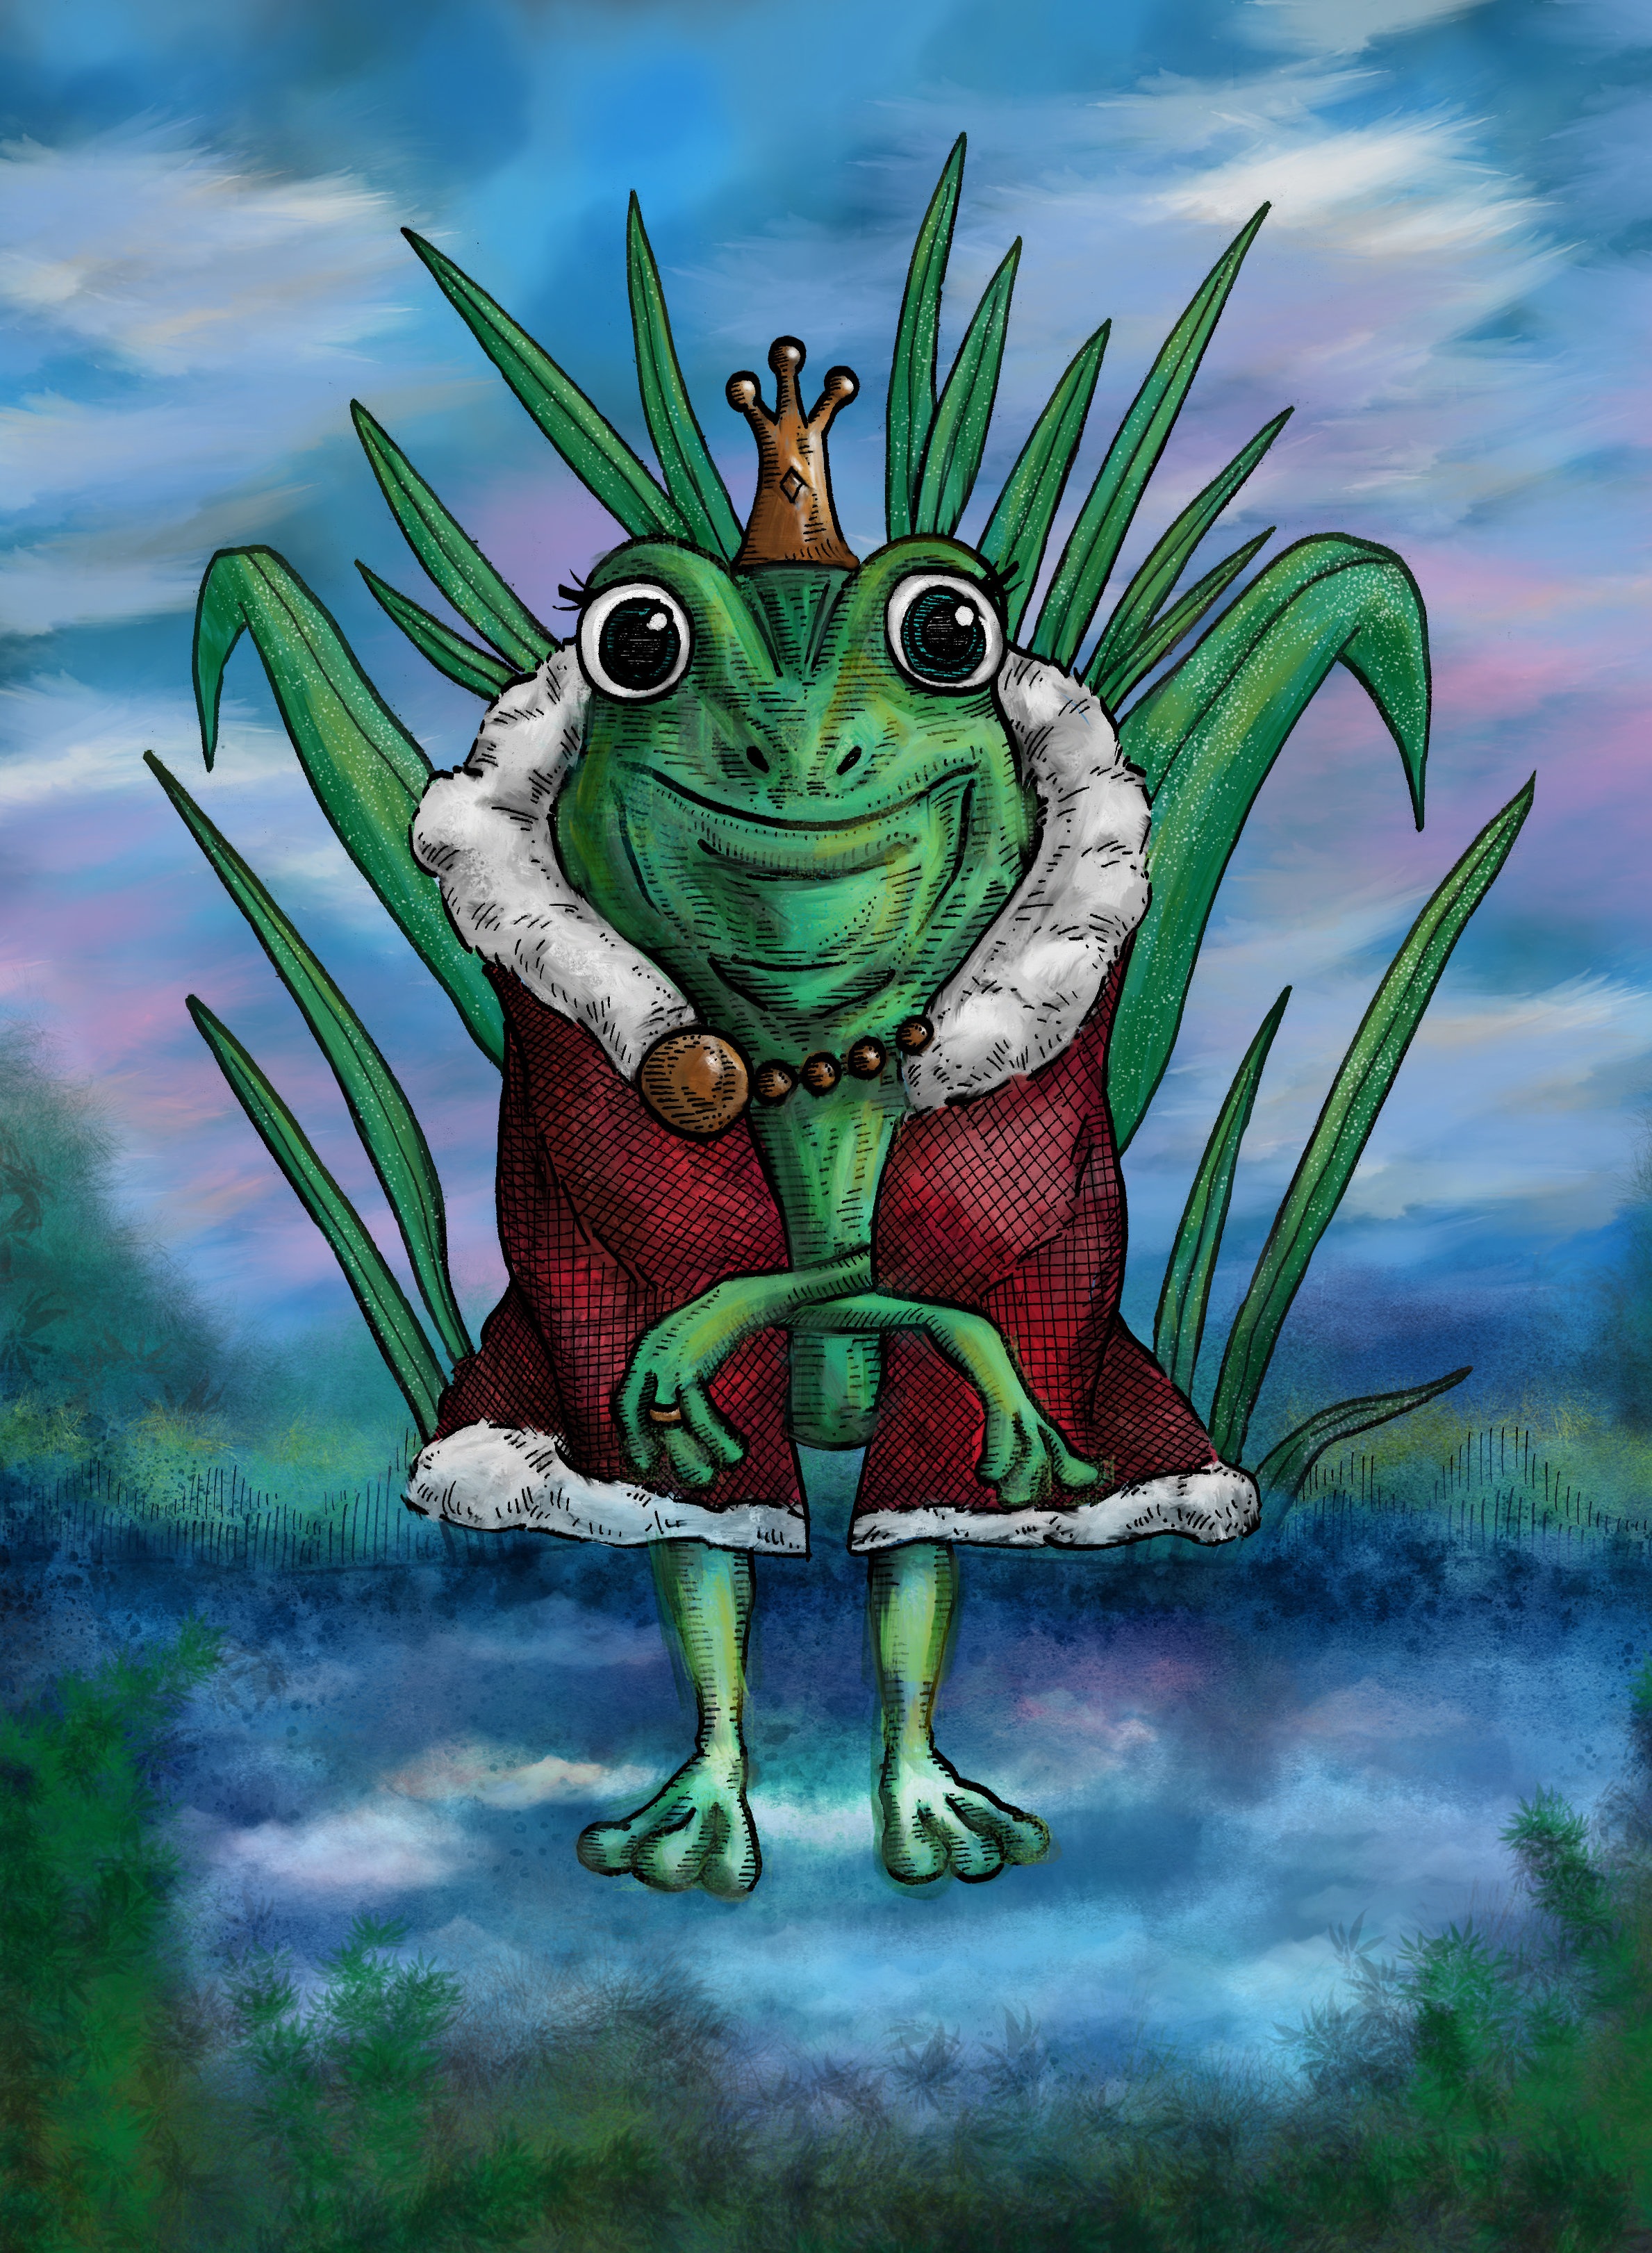 The Frog Queen